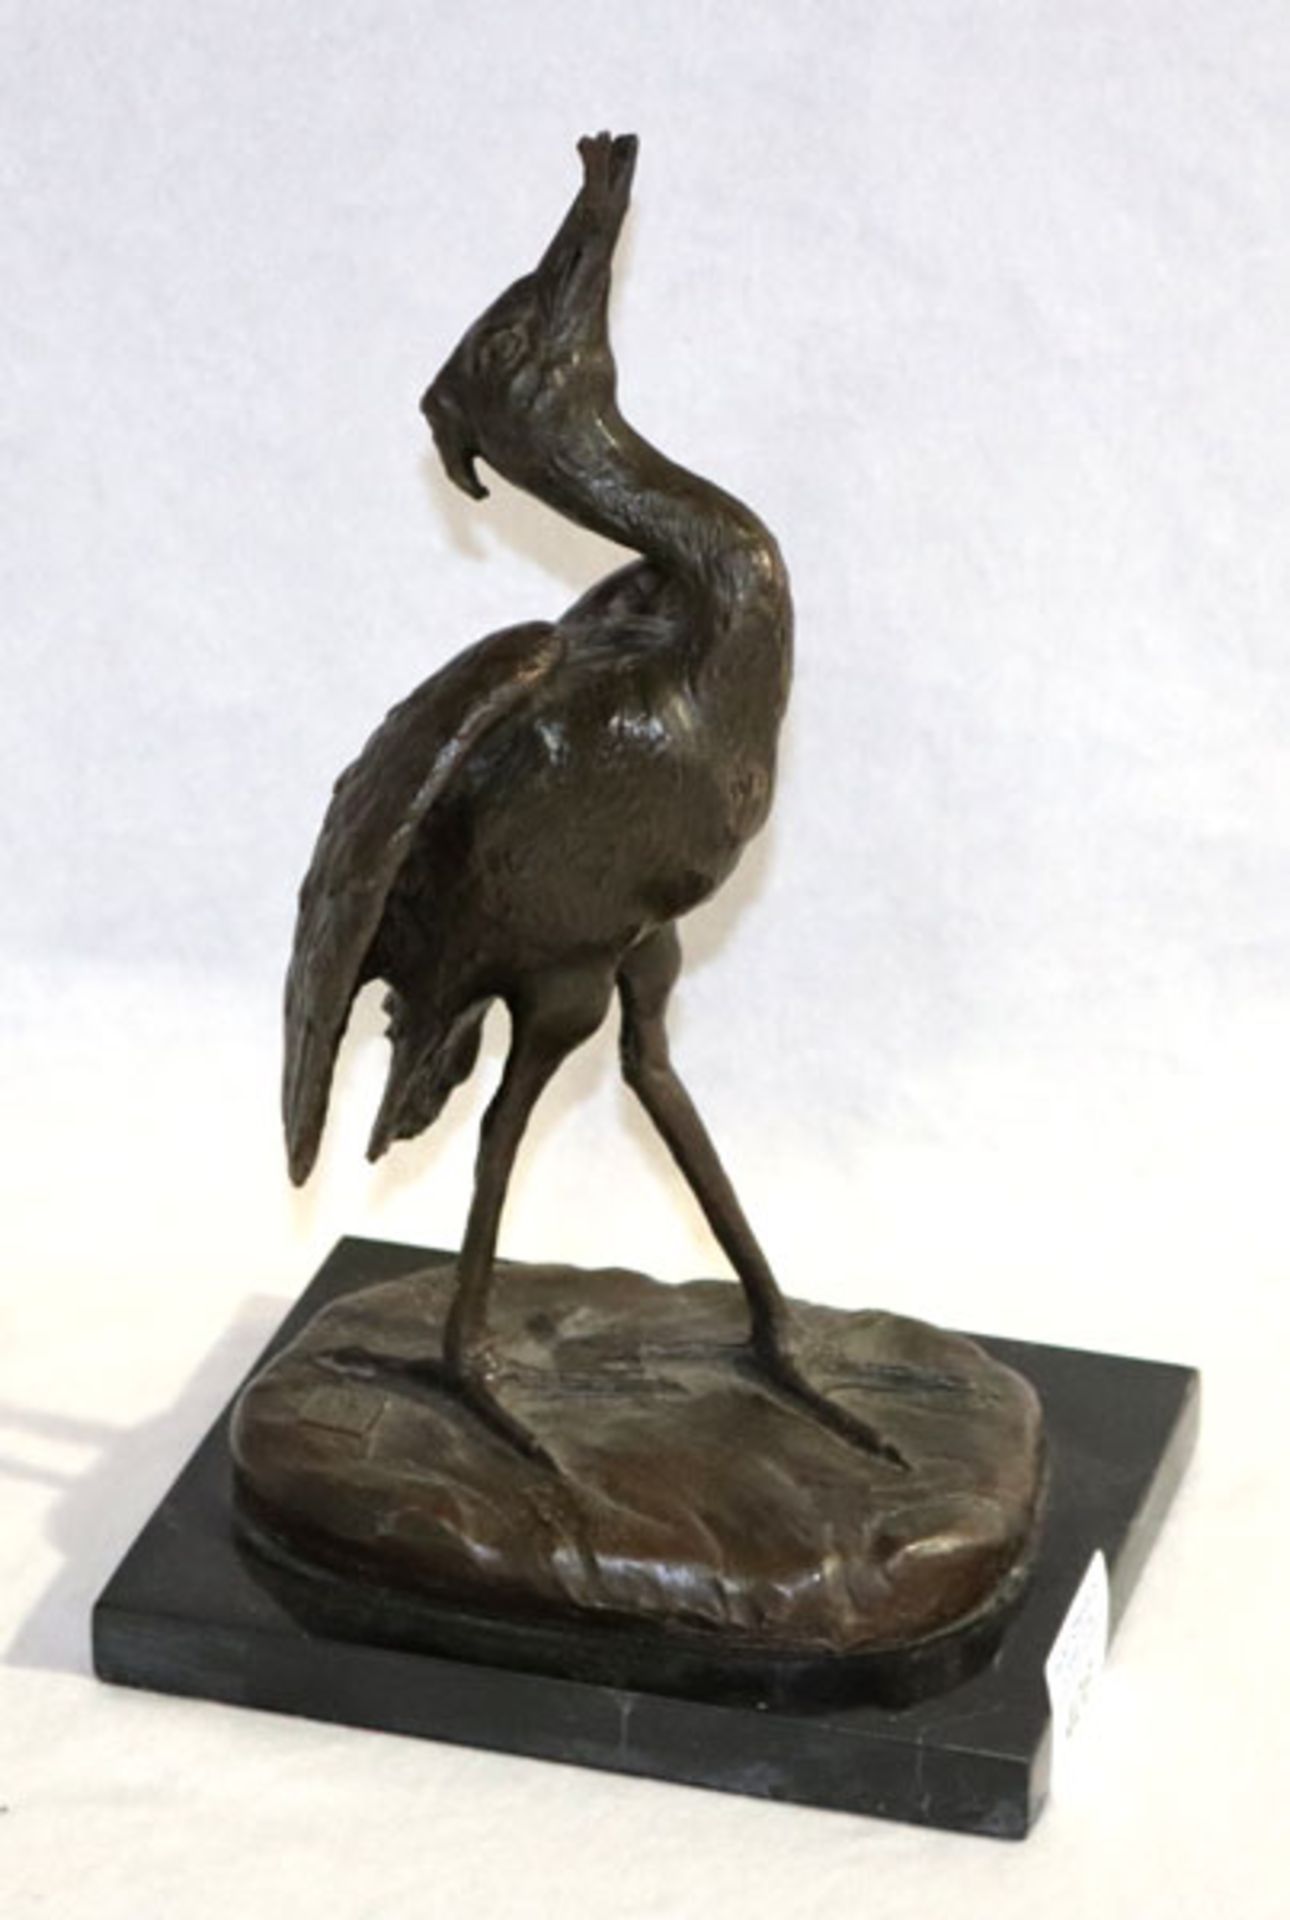 Bronze Tierfigur 'Fischreiher', bez. A. Leonard mit Gußstempel, auf schwarzem Marmorsockel, H 27 cm